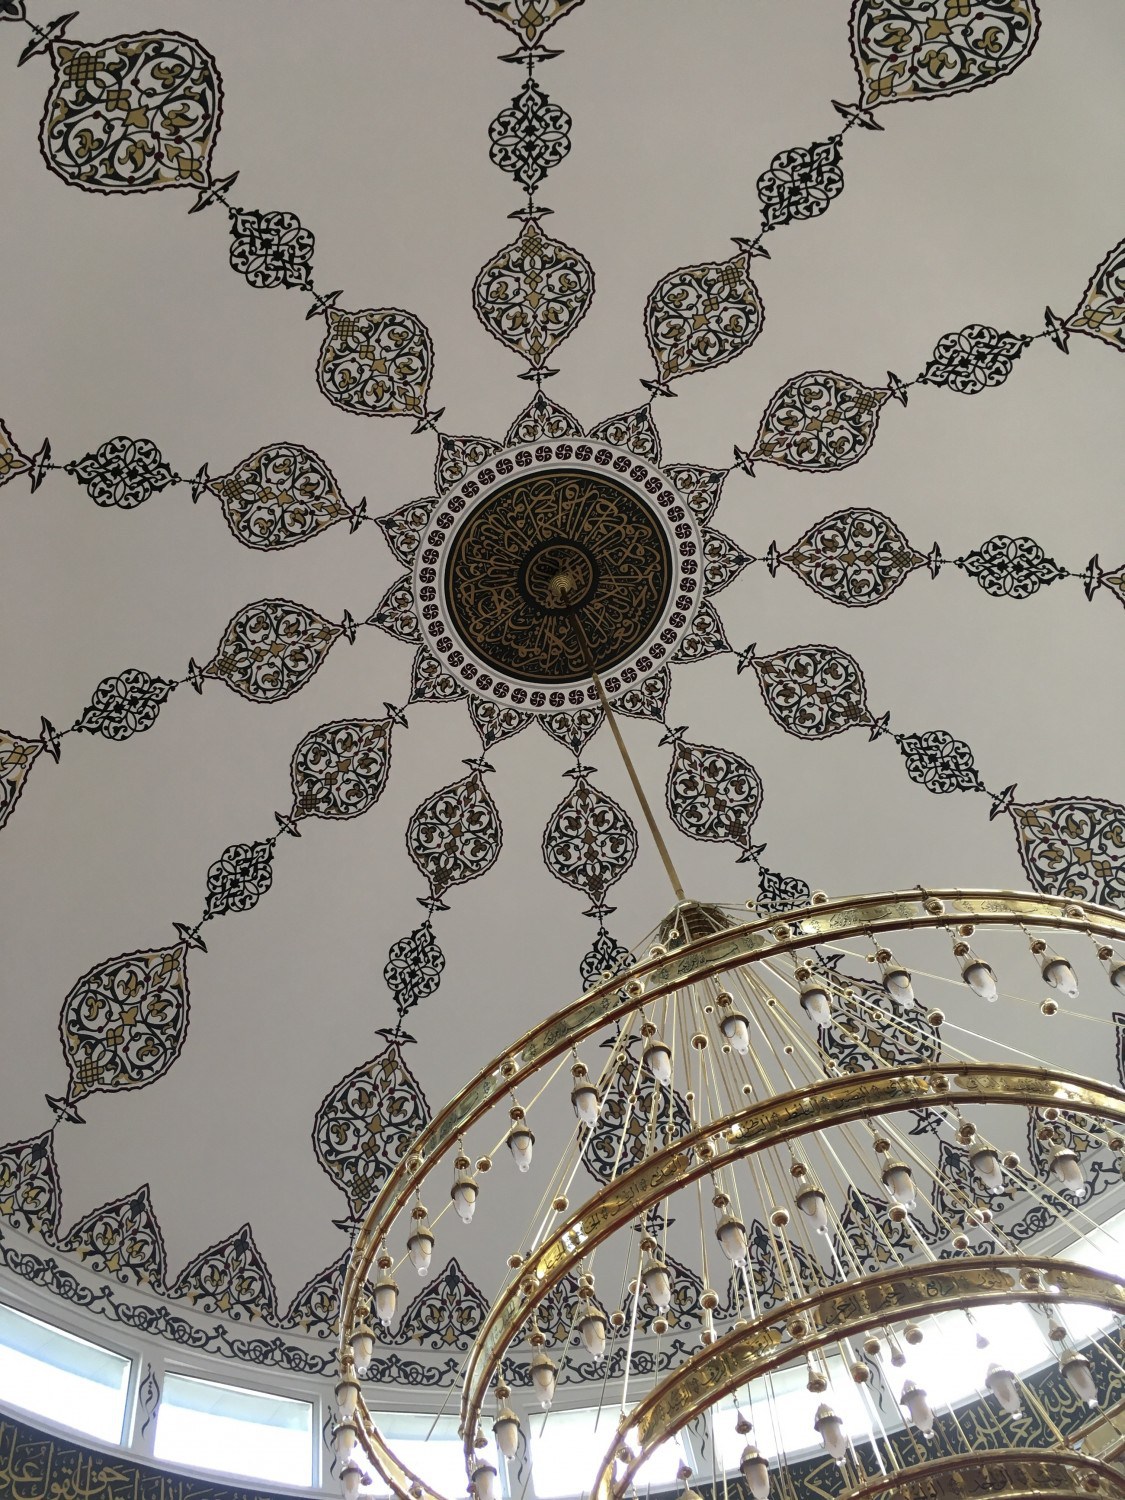 Mosquée Eyyub Sultan de Vénissieux